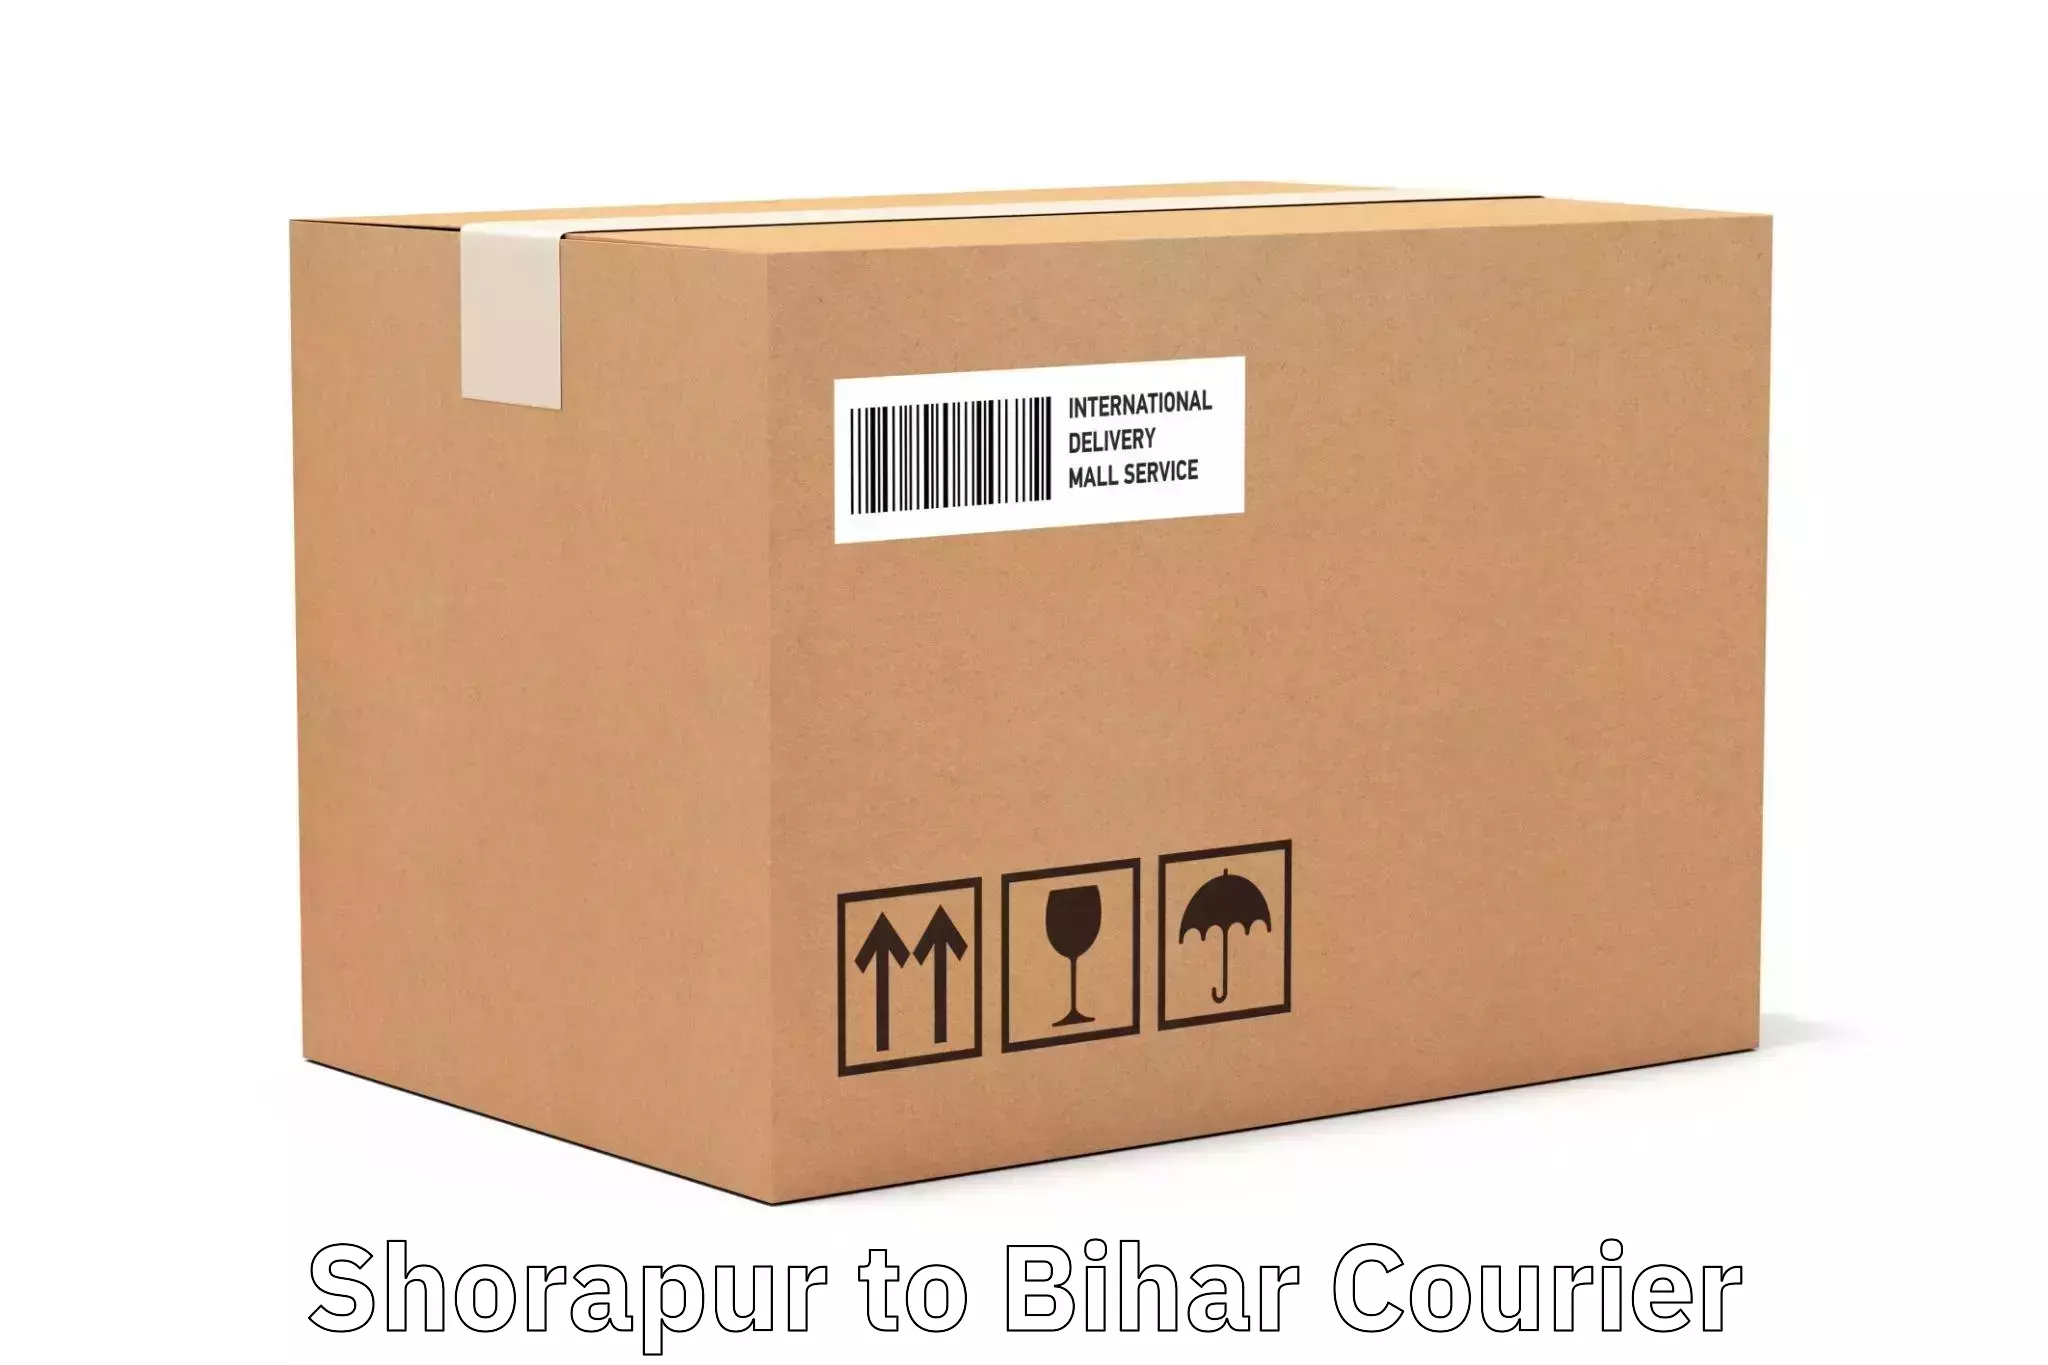 Urban courier service Shorapur to Sonbarsa